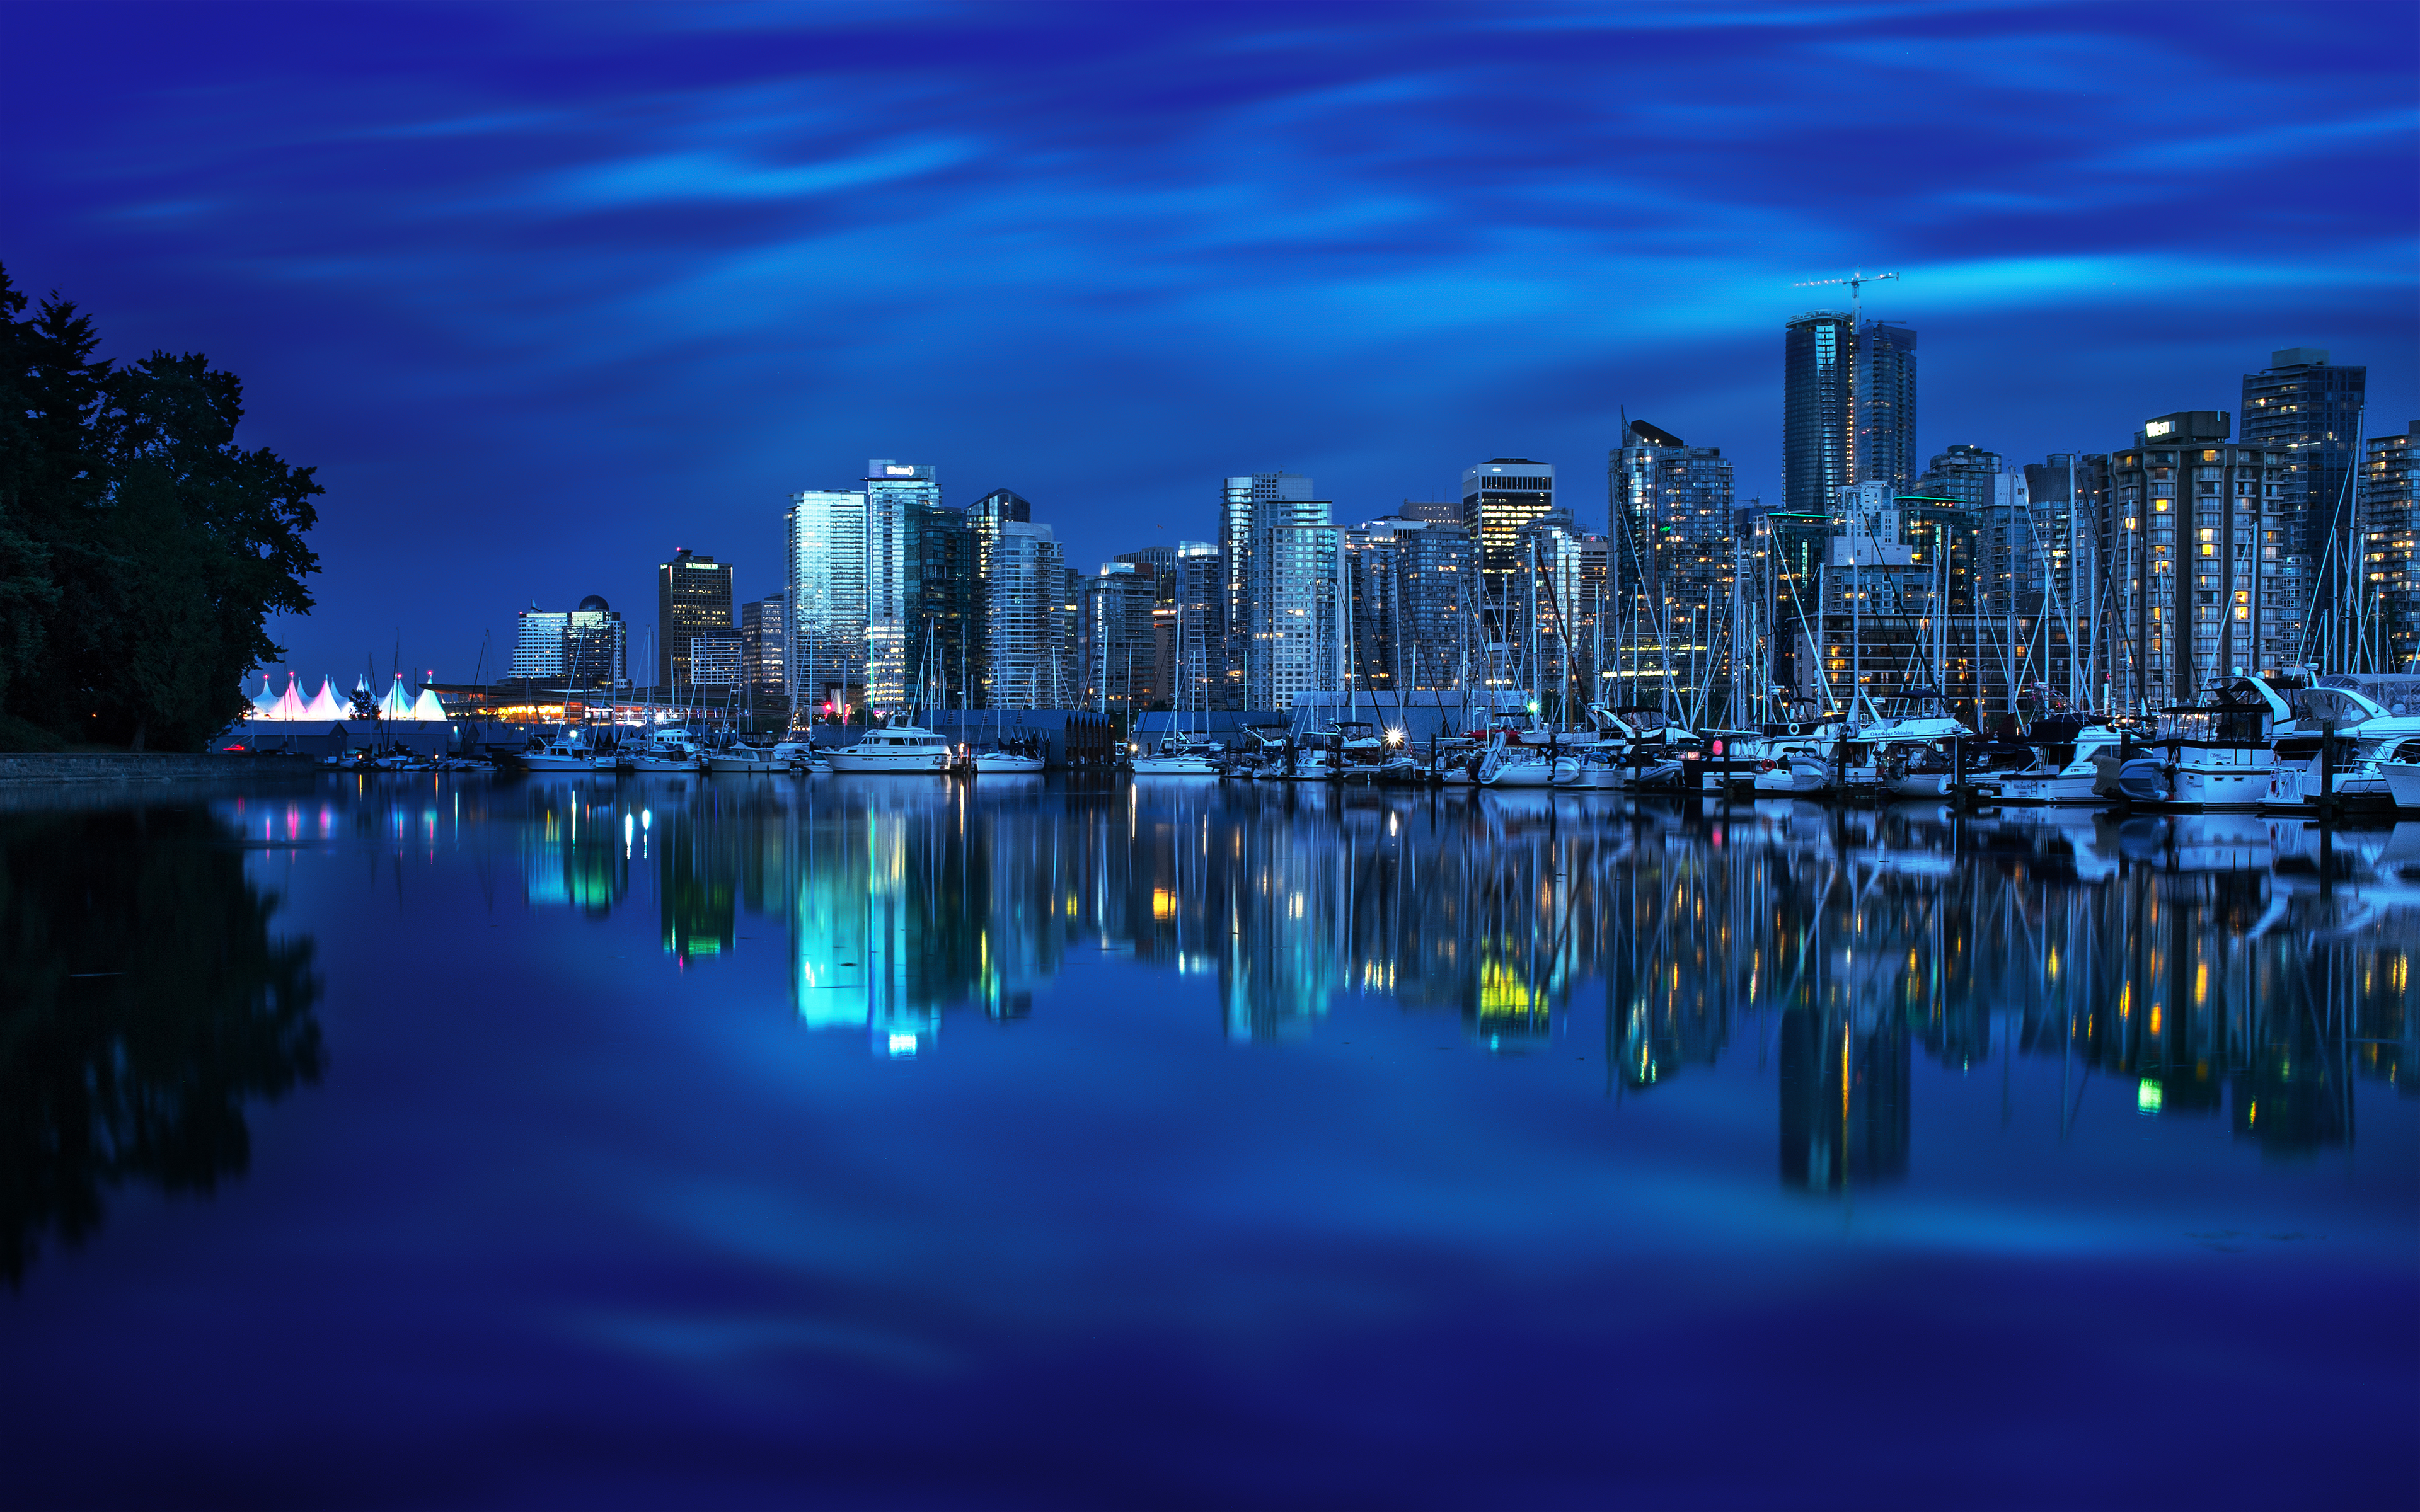 375595 免費下載壁紙 人造, 温哥华, 蓝色, 建筑, 加拿大, 城市, 港口, 夜晚, 倒影, 游艇 屏保和圖片